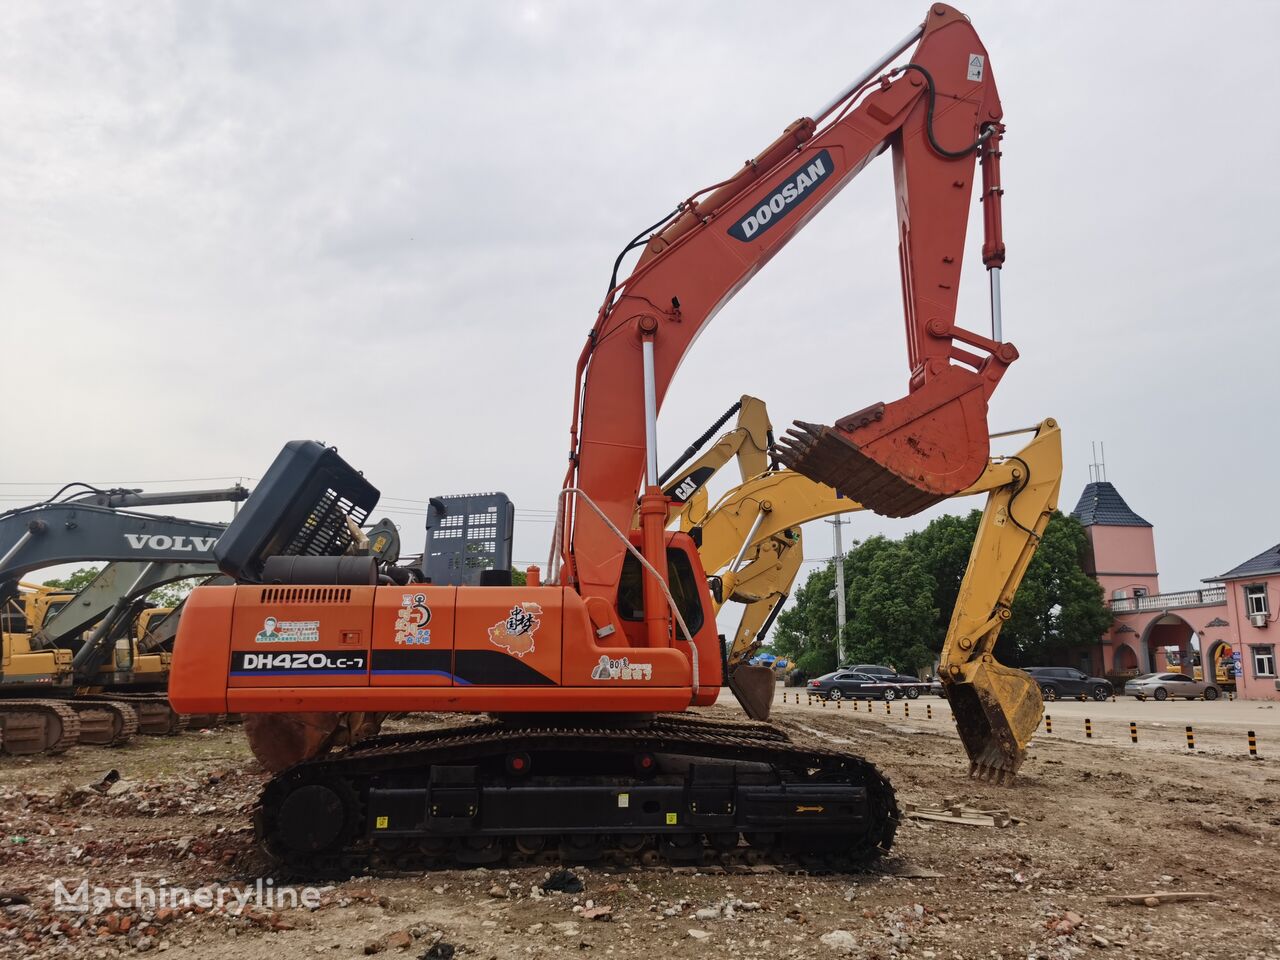 Doosan DH420-7 tracked excavator